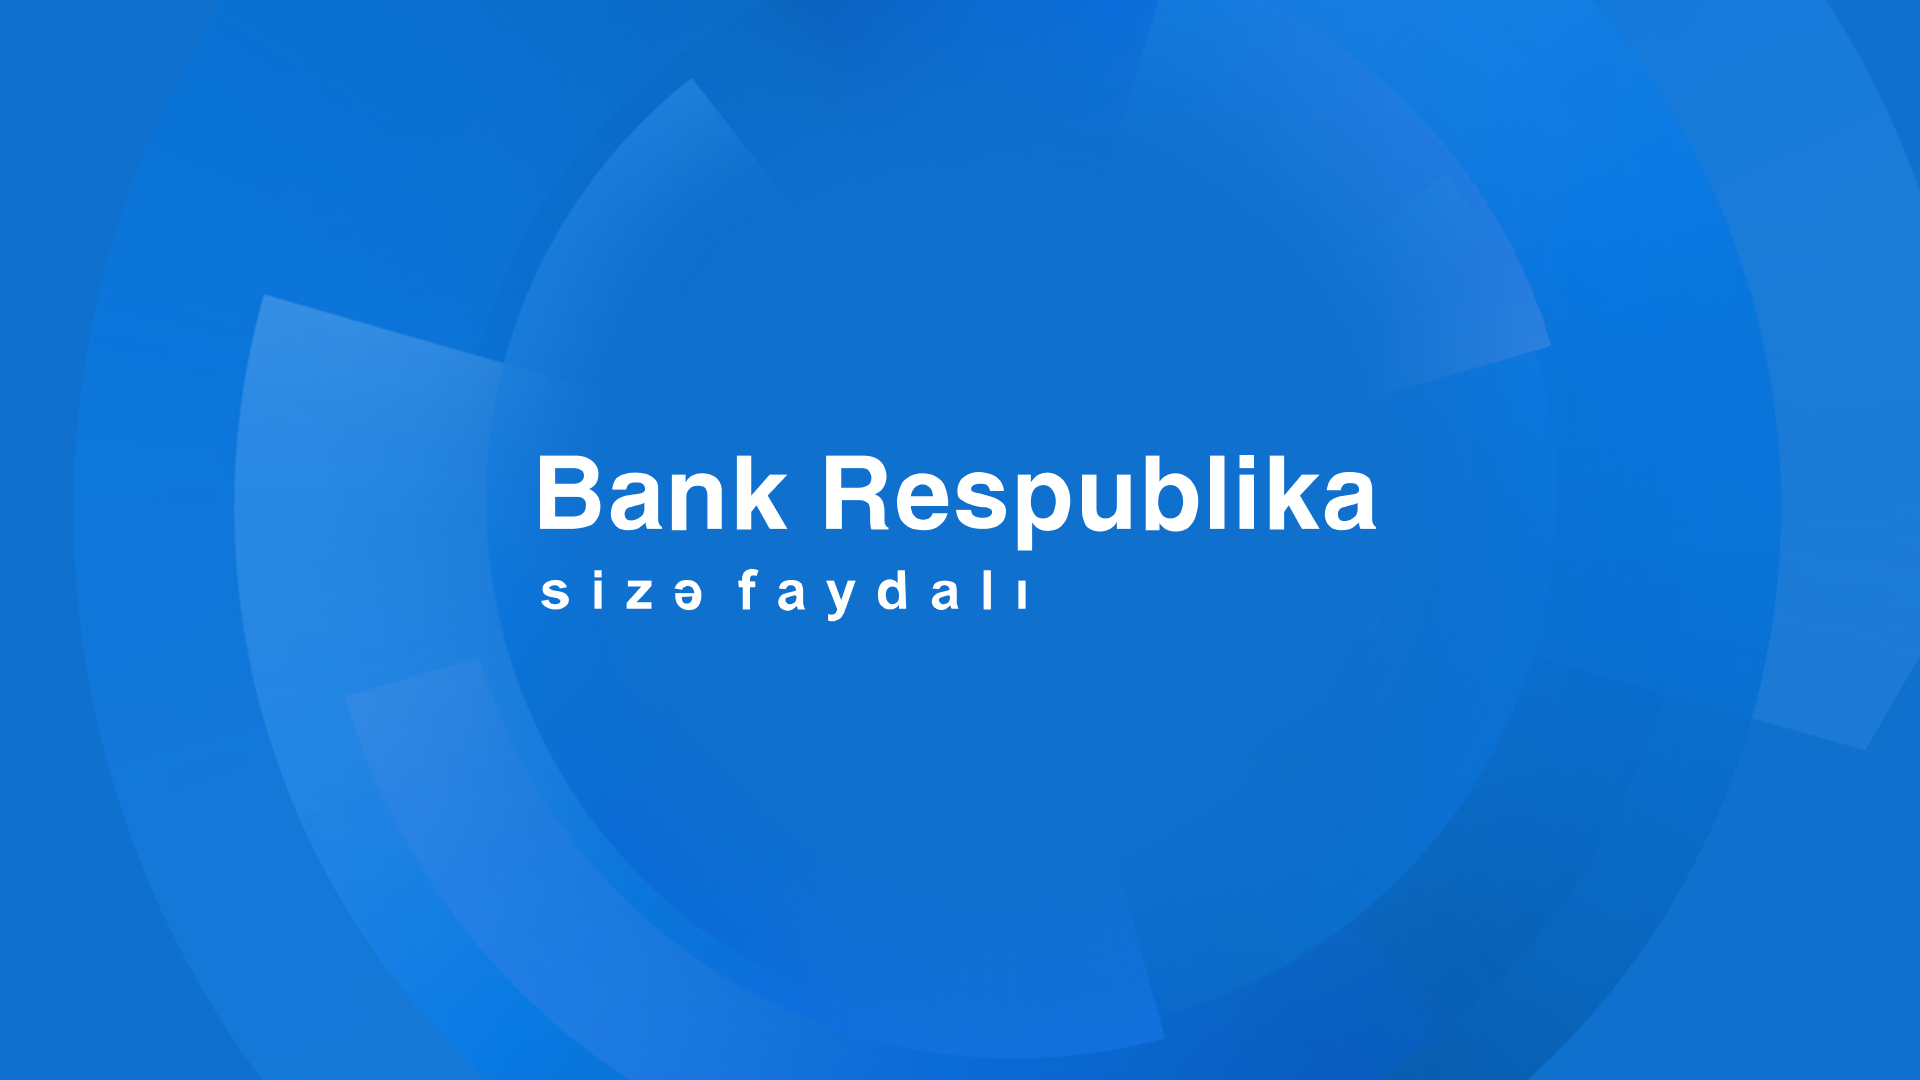 По итогам полугодия Банк Республика продемонстрировал рост по всем финансовым показателям (ФОТО)